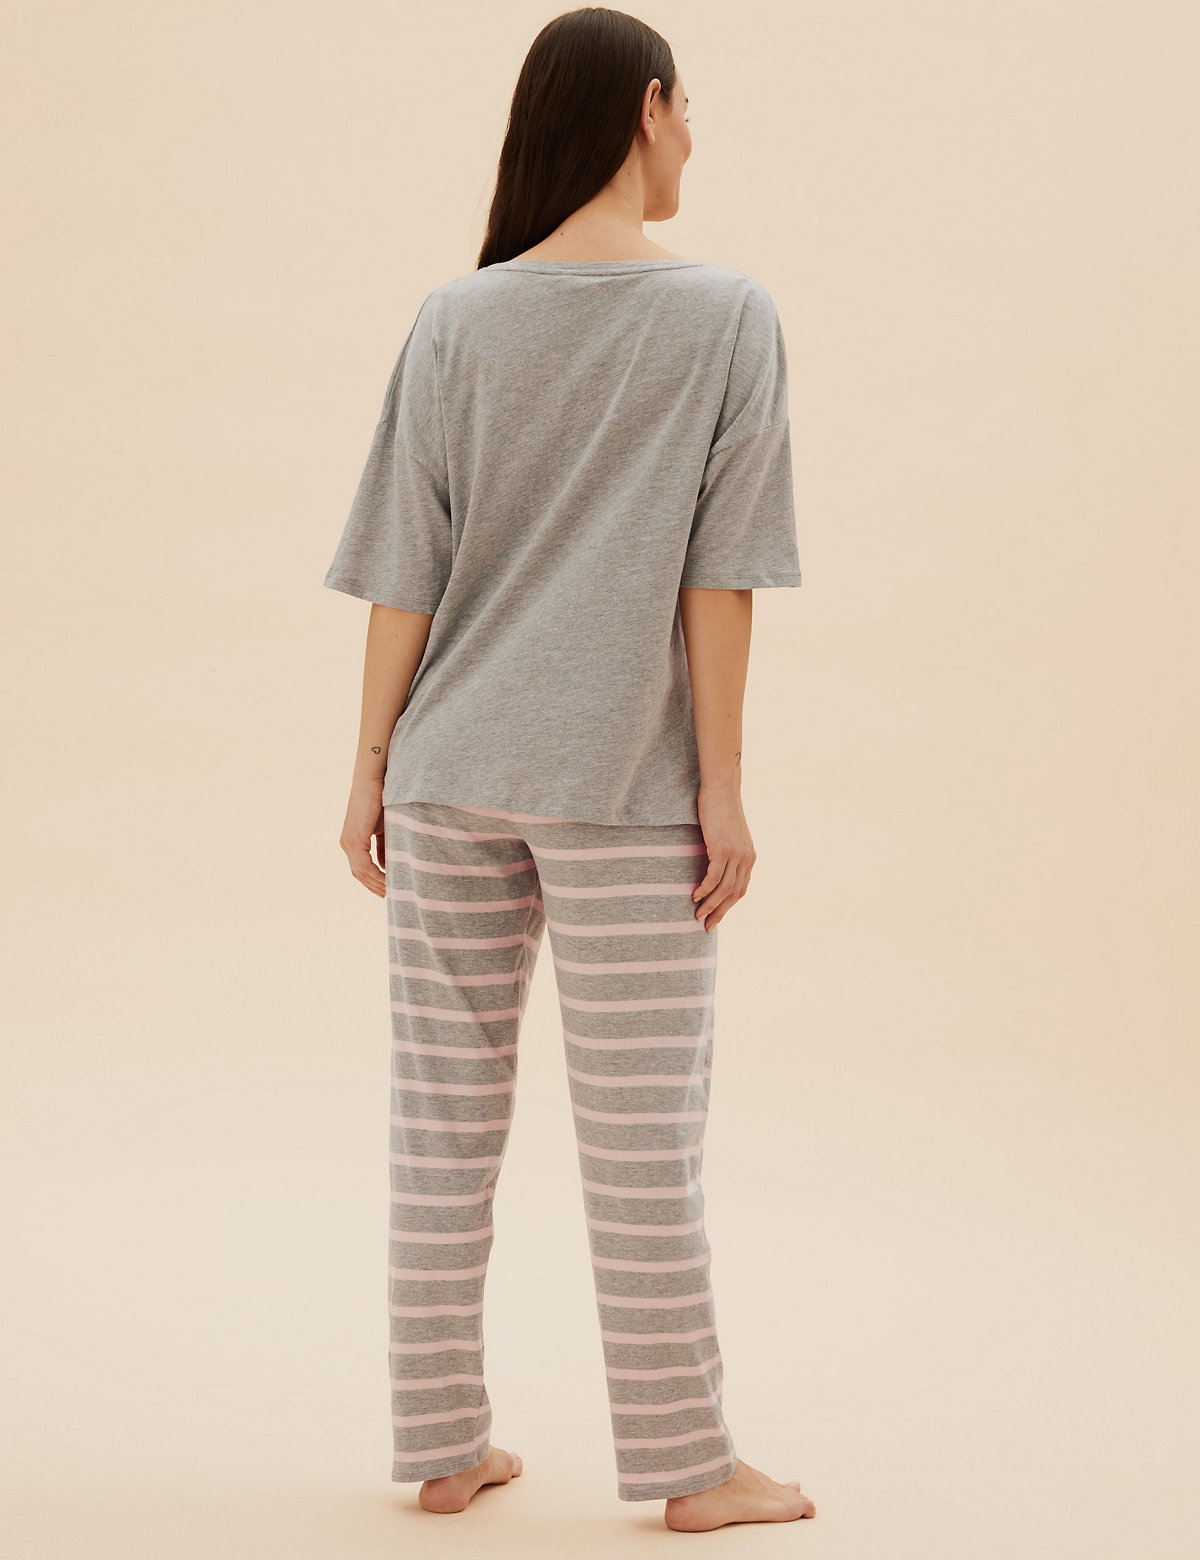 Cotton Stripe Pyjama Set